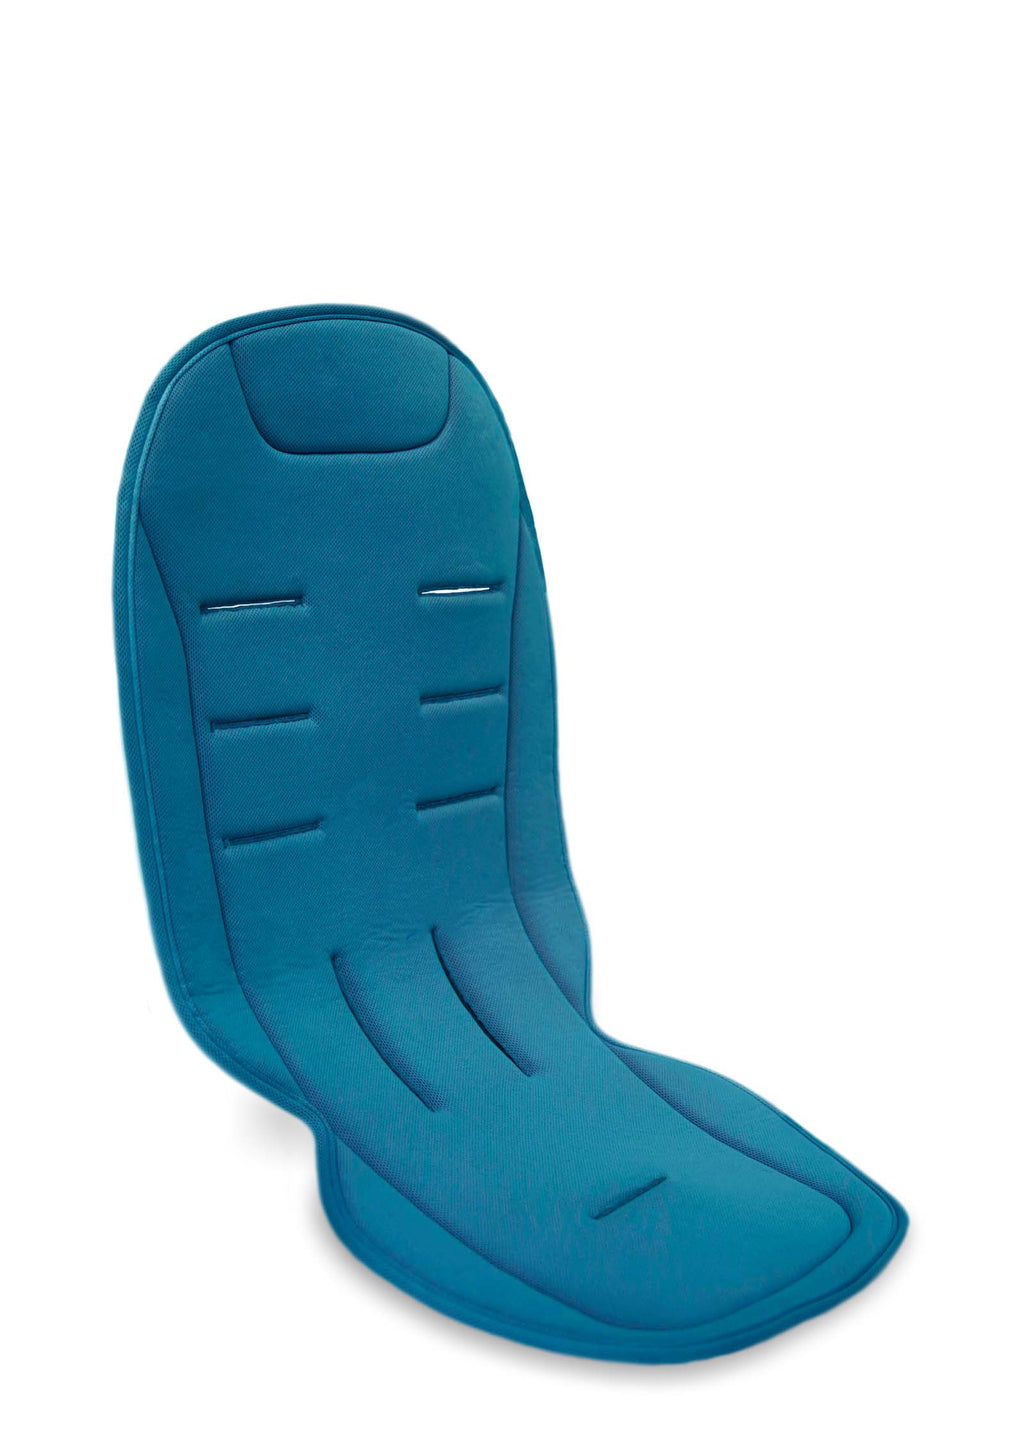 Joolz Komfort Sitzauflage Blau